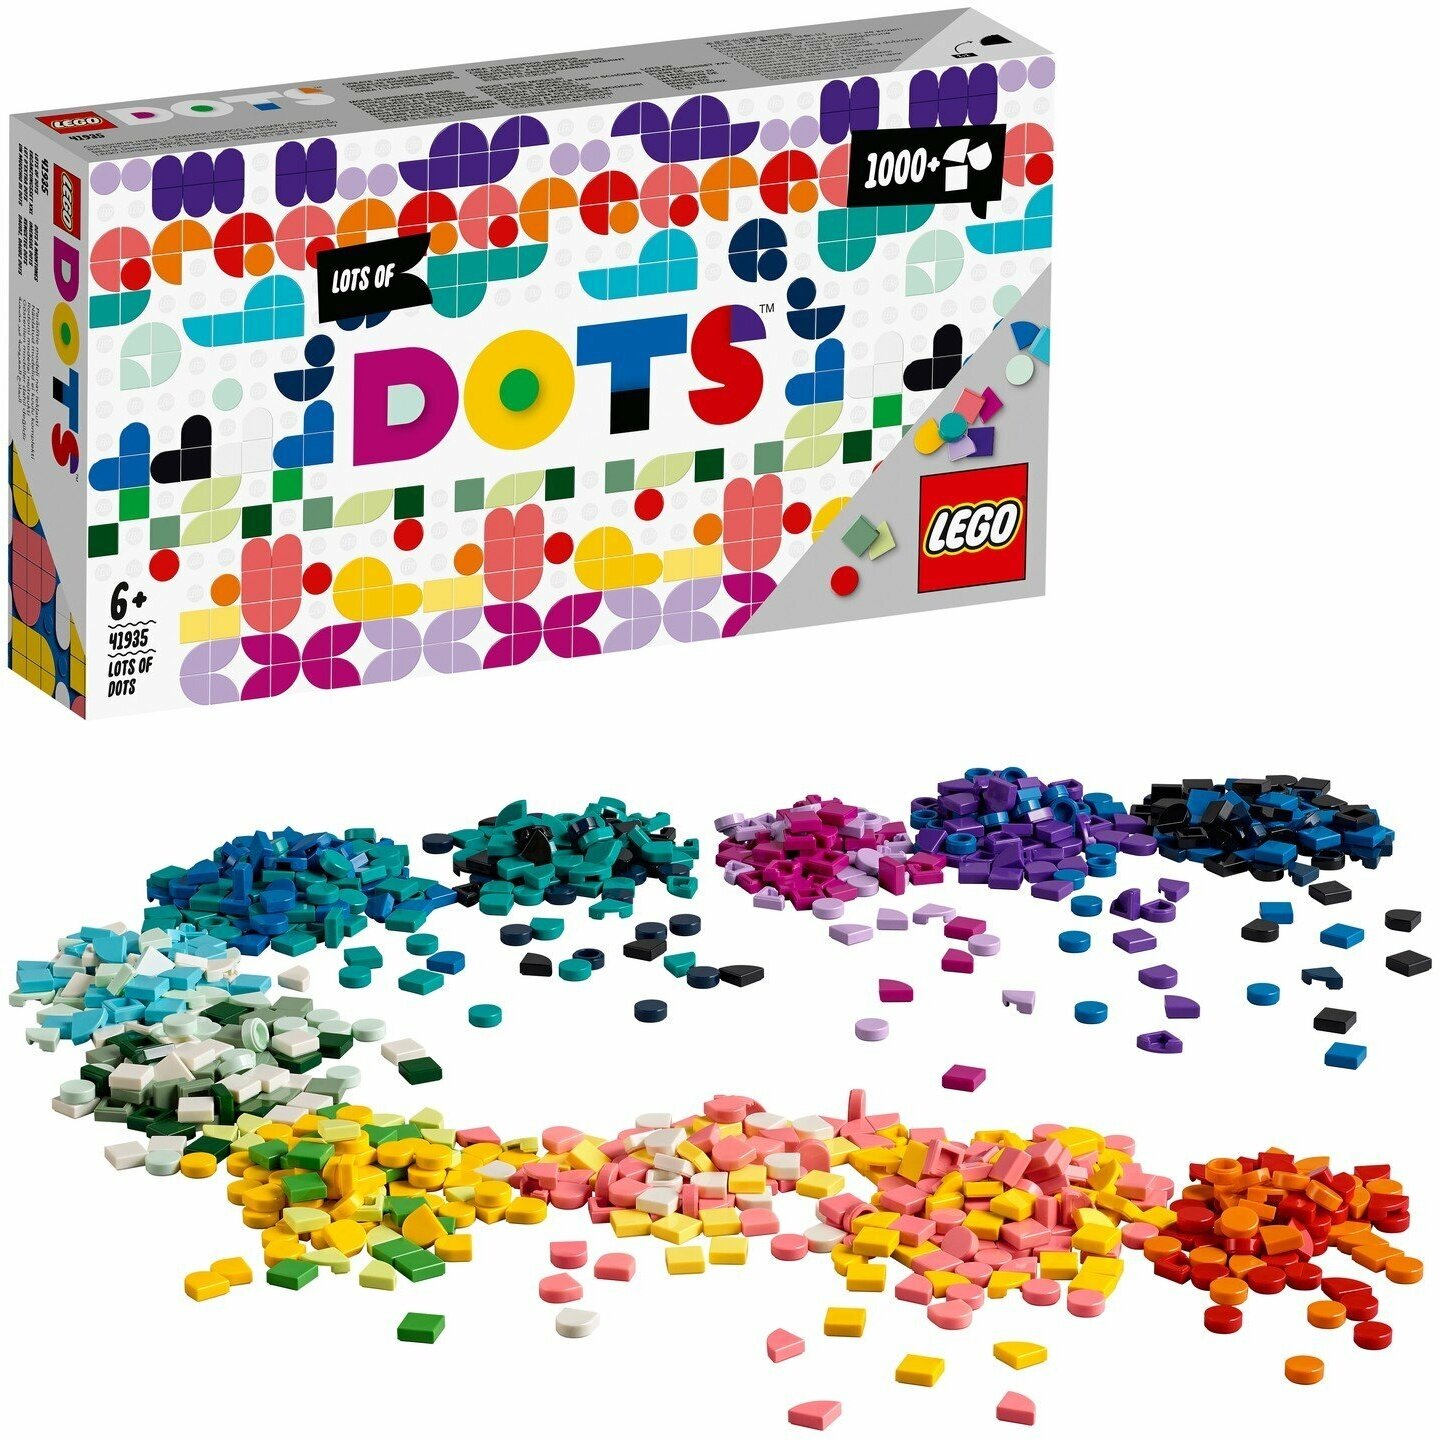 Конструктор LEGO DOTS 41935 Большой набор тайлов